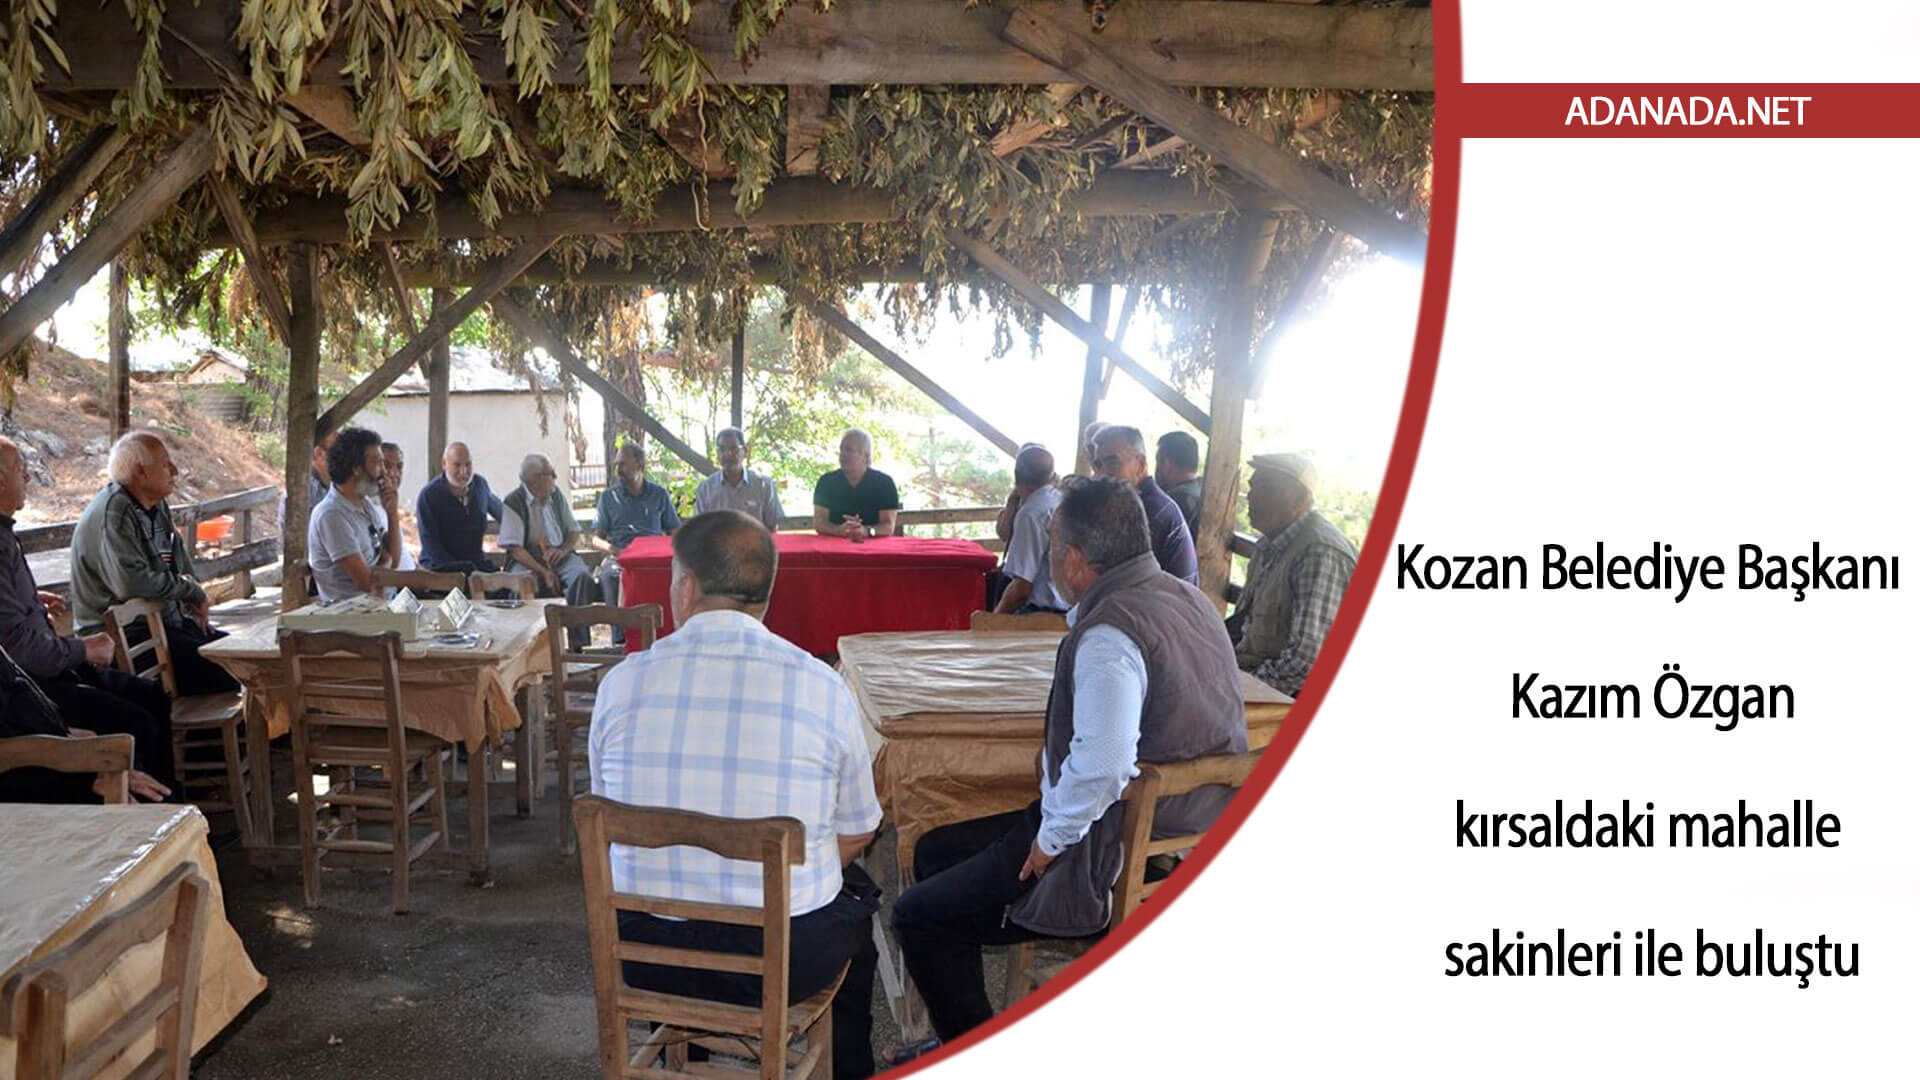 Kozan Belediye Başkanı Özgan, kırsaldaki mahalle sakinleri ile buluştu